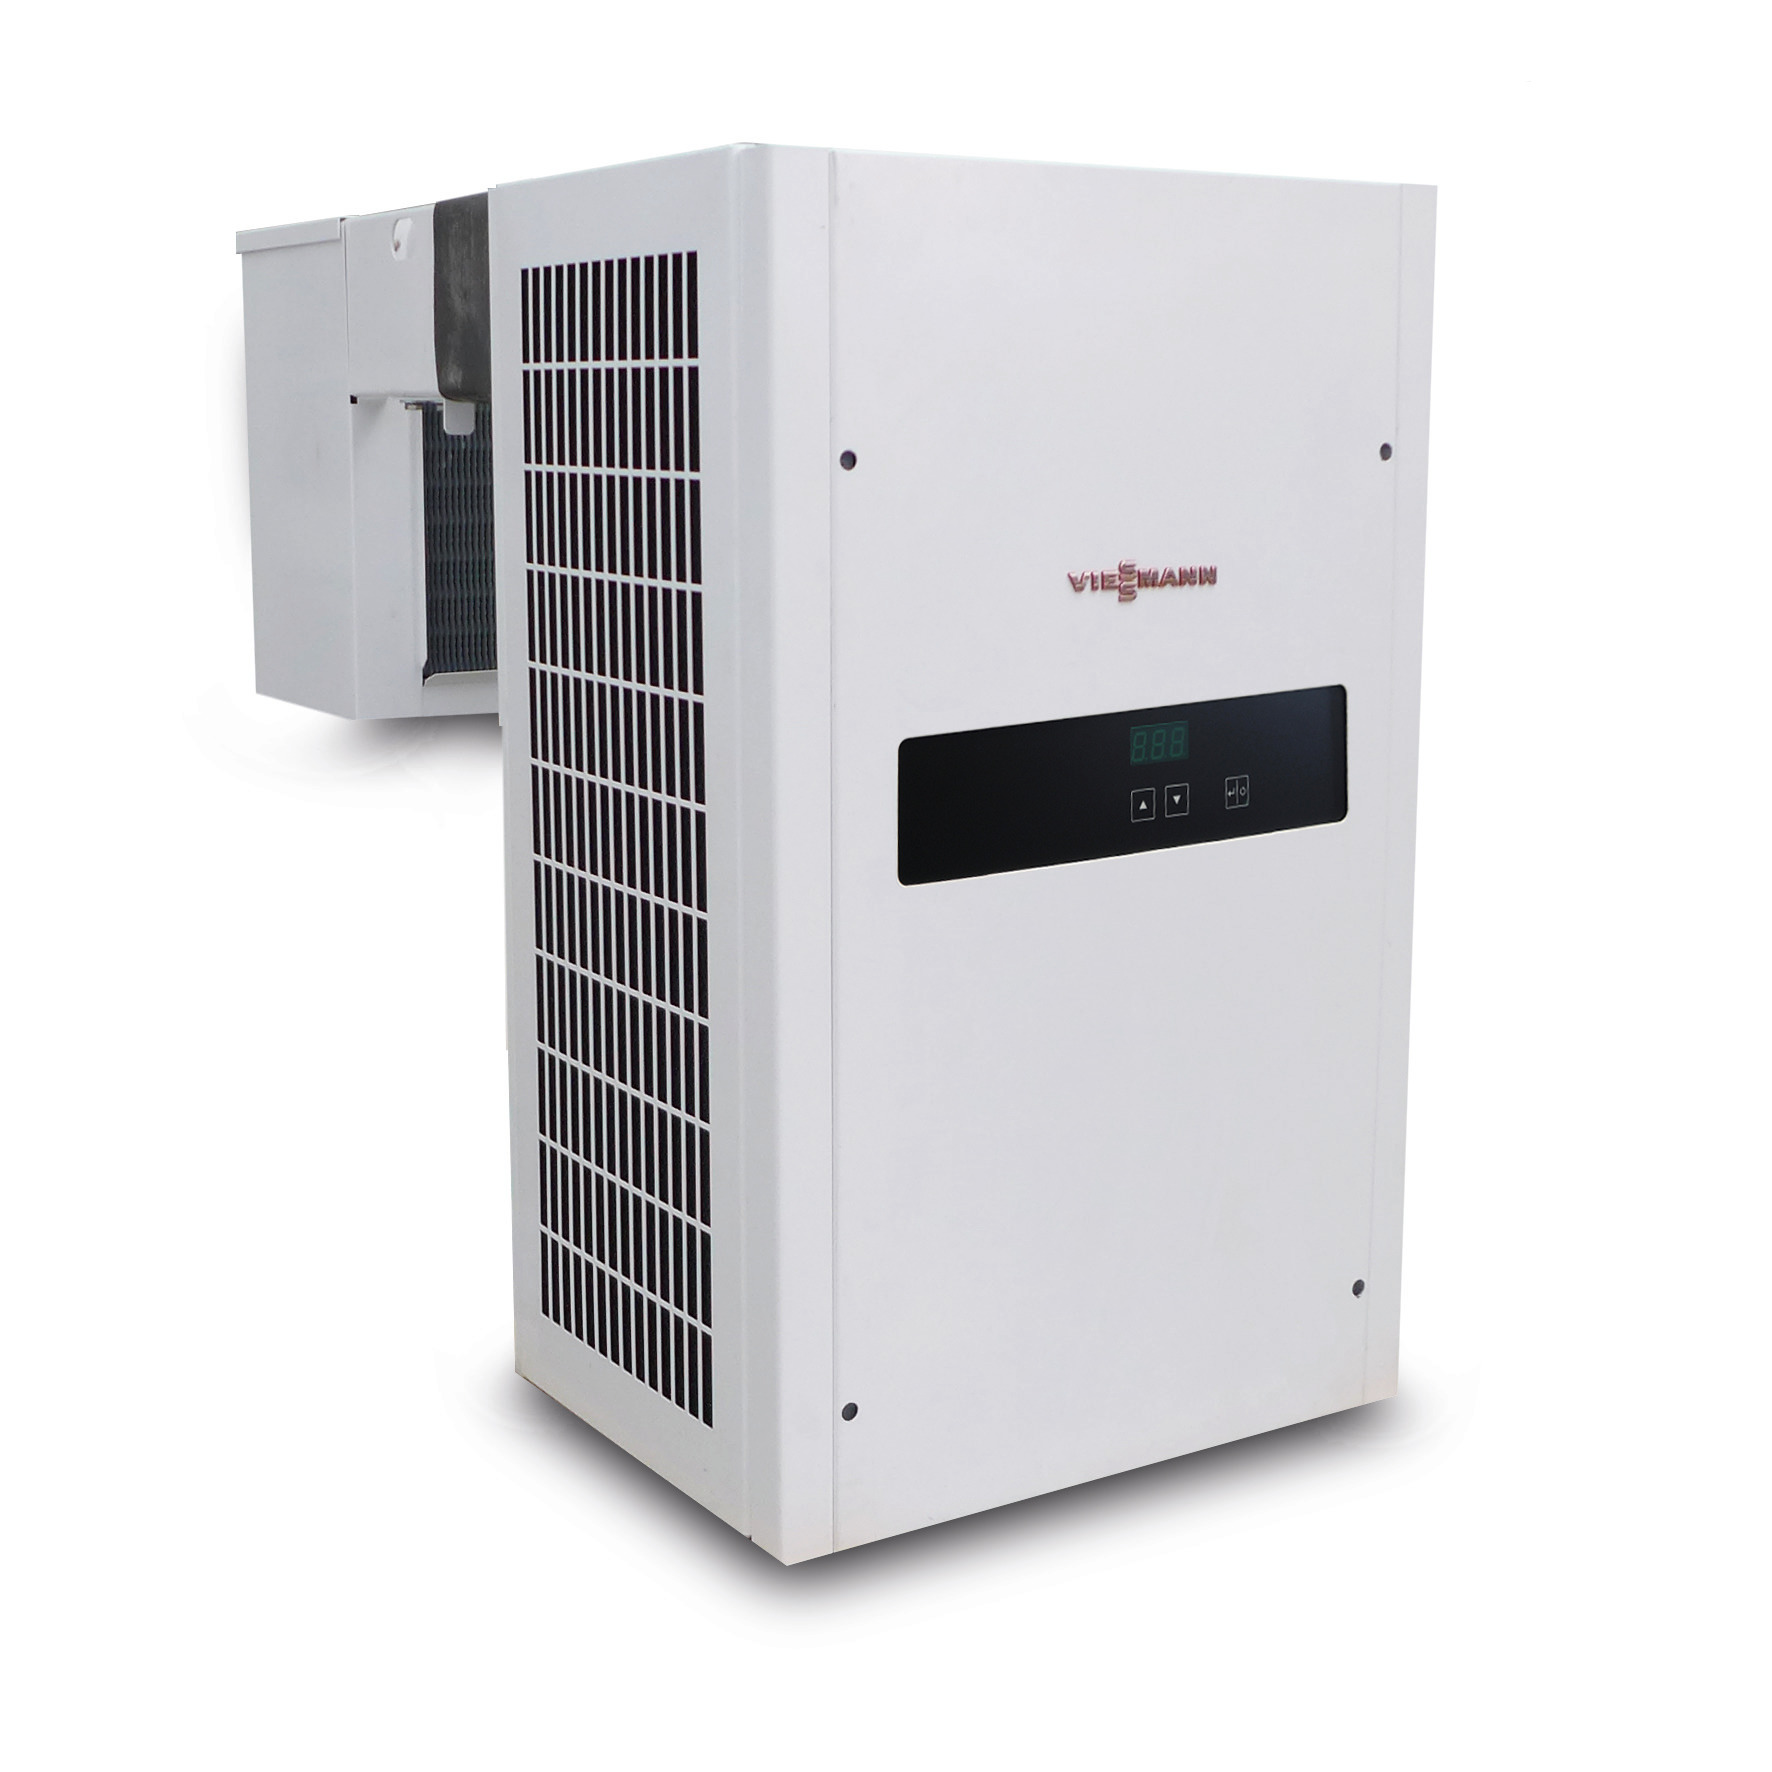 Huckepack-Kühlaggregat 0,50 kW / 230 V mit elektronischer Regelung